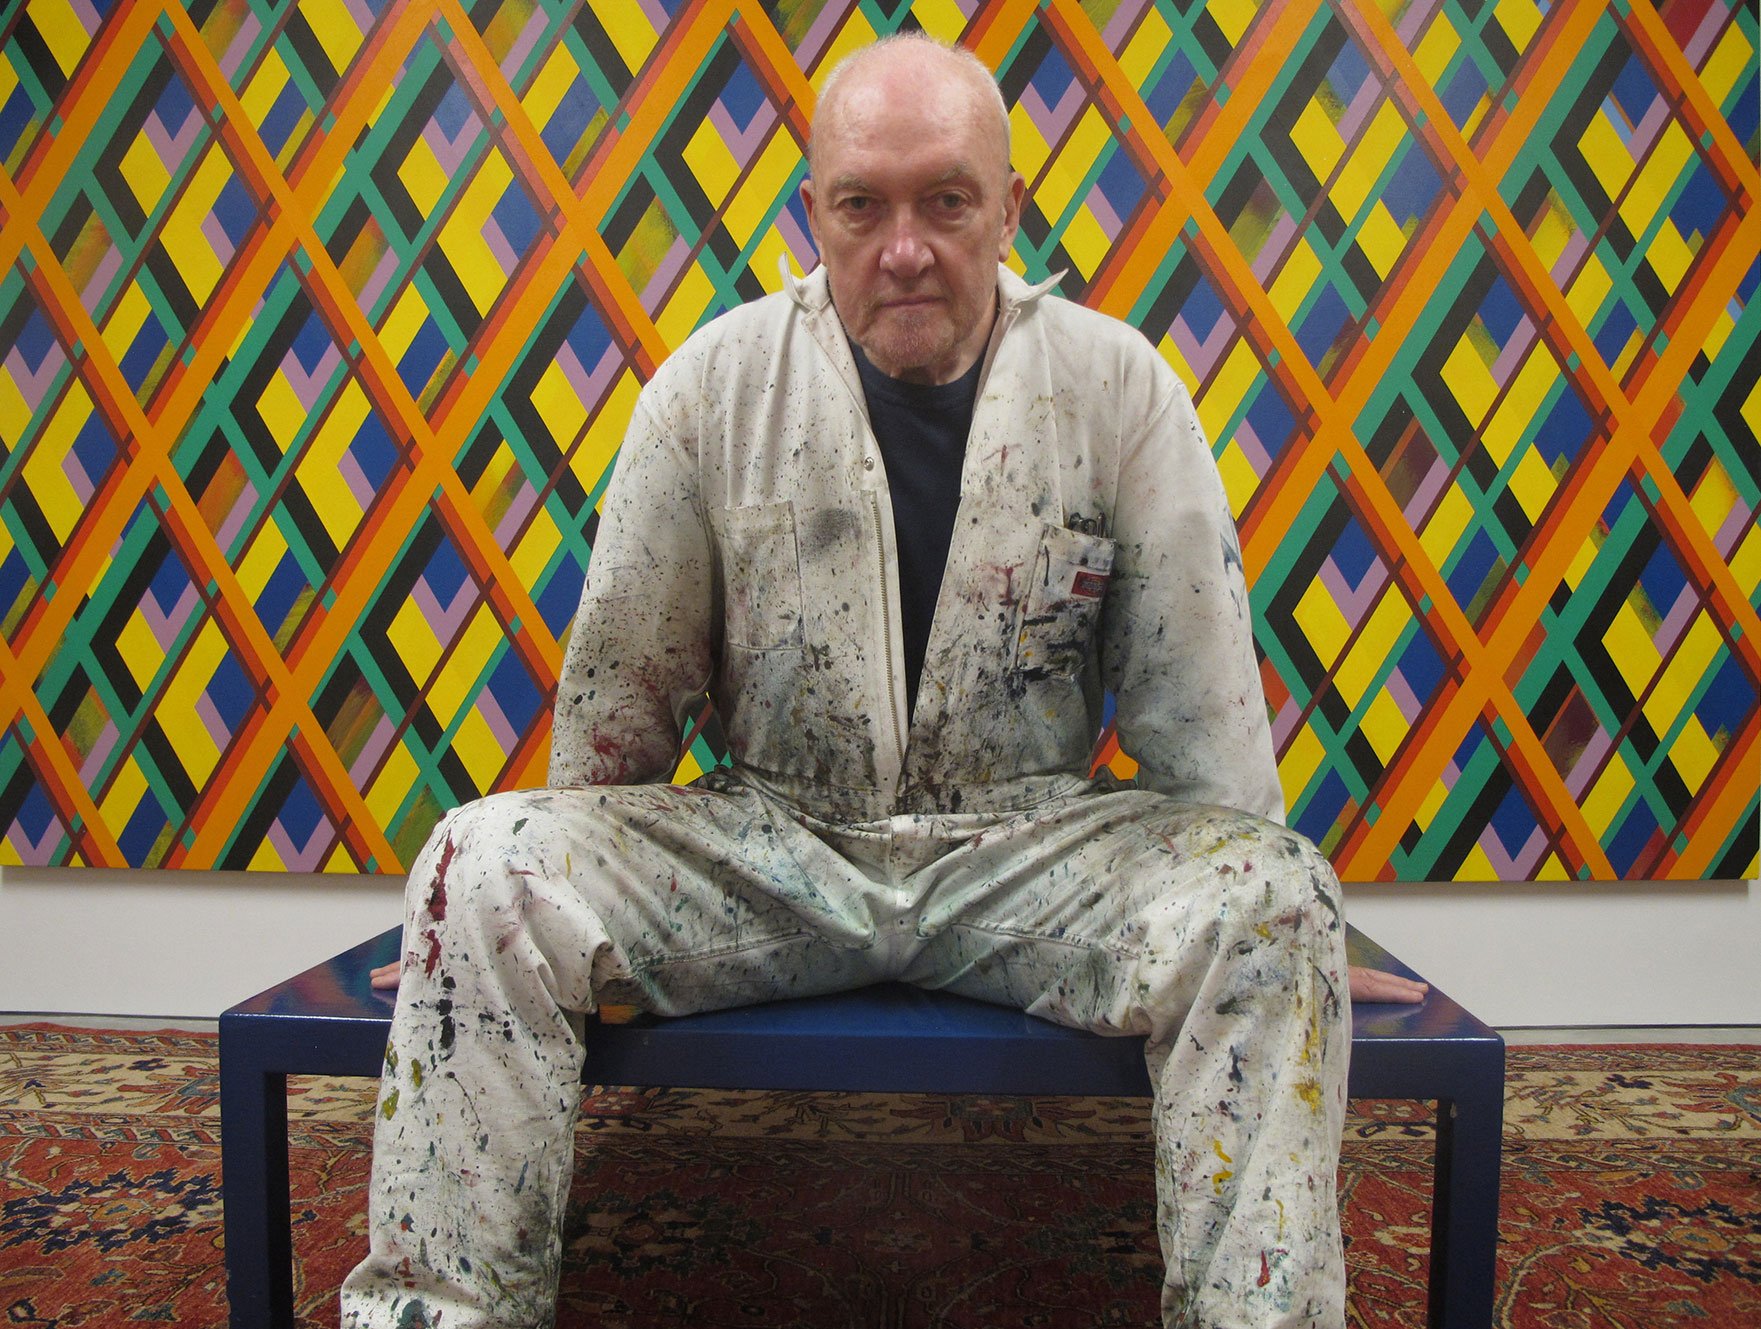 Der zeitgenössische Künstler Sean Scully in seiner Ausstellung "Sean Scully. Vita Duplex", die vom 24. März bis 5. August 2018 in der Staatlichen Kunsthalle Karlsruhe zu sehen war.